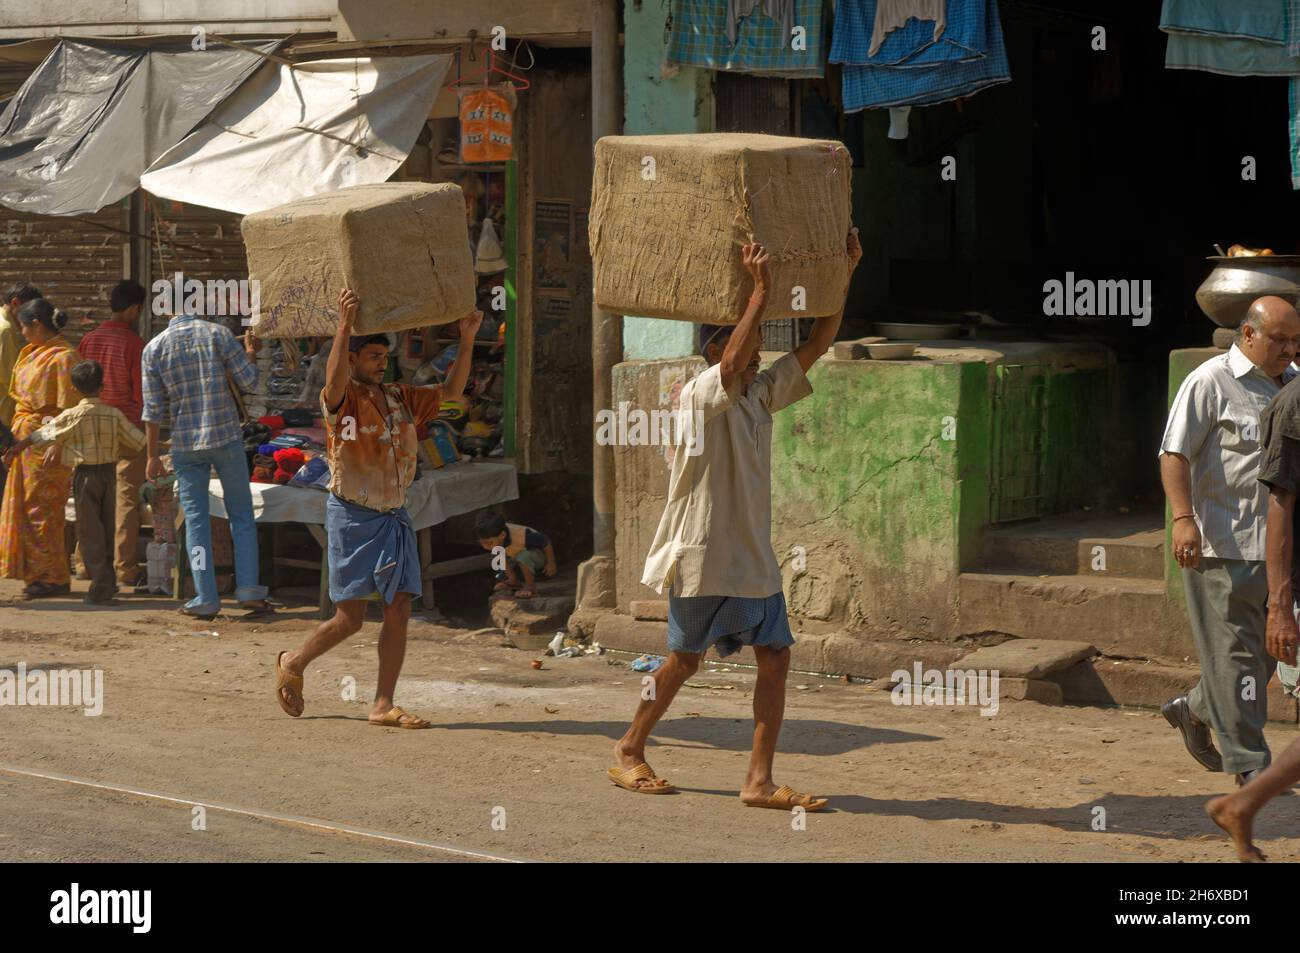 Manuelle Labou, zwei Menr, die Waren in Kisten transportieren, indem sie ihre Köpfe in einer Seitenstraße von Kalkutta, Indien, tragen Stockfoto